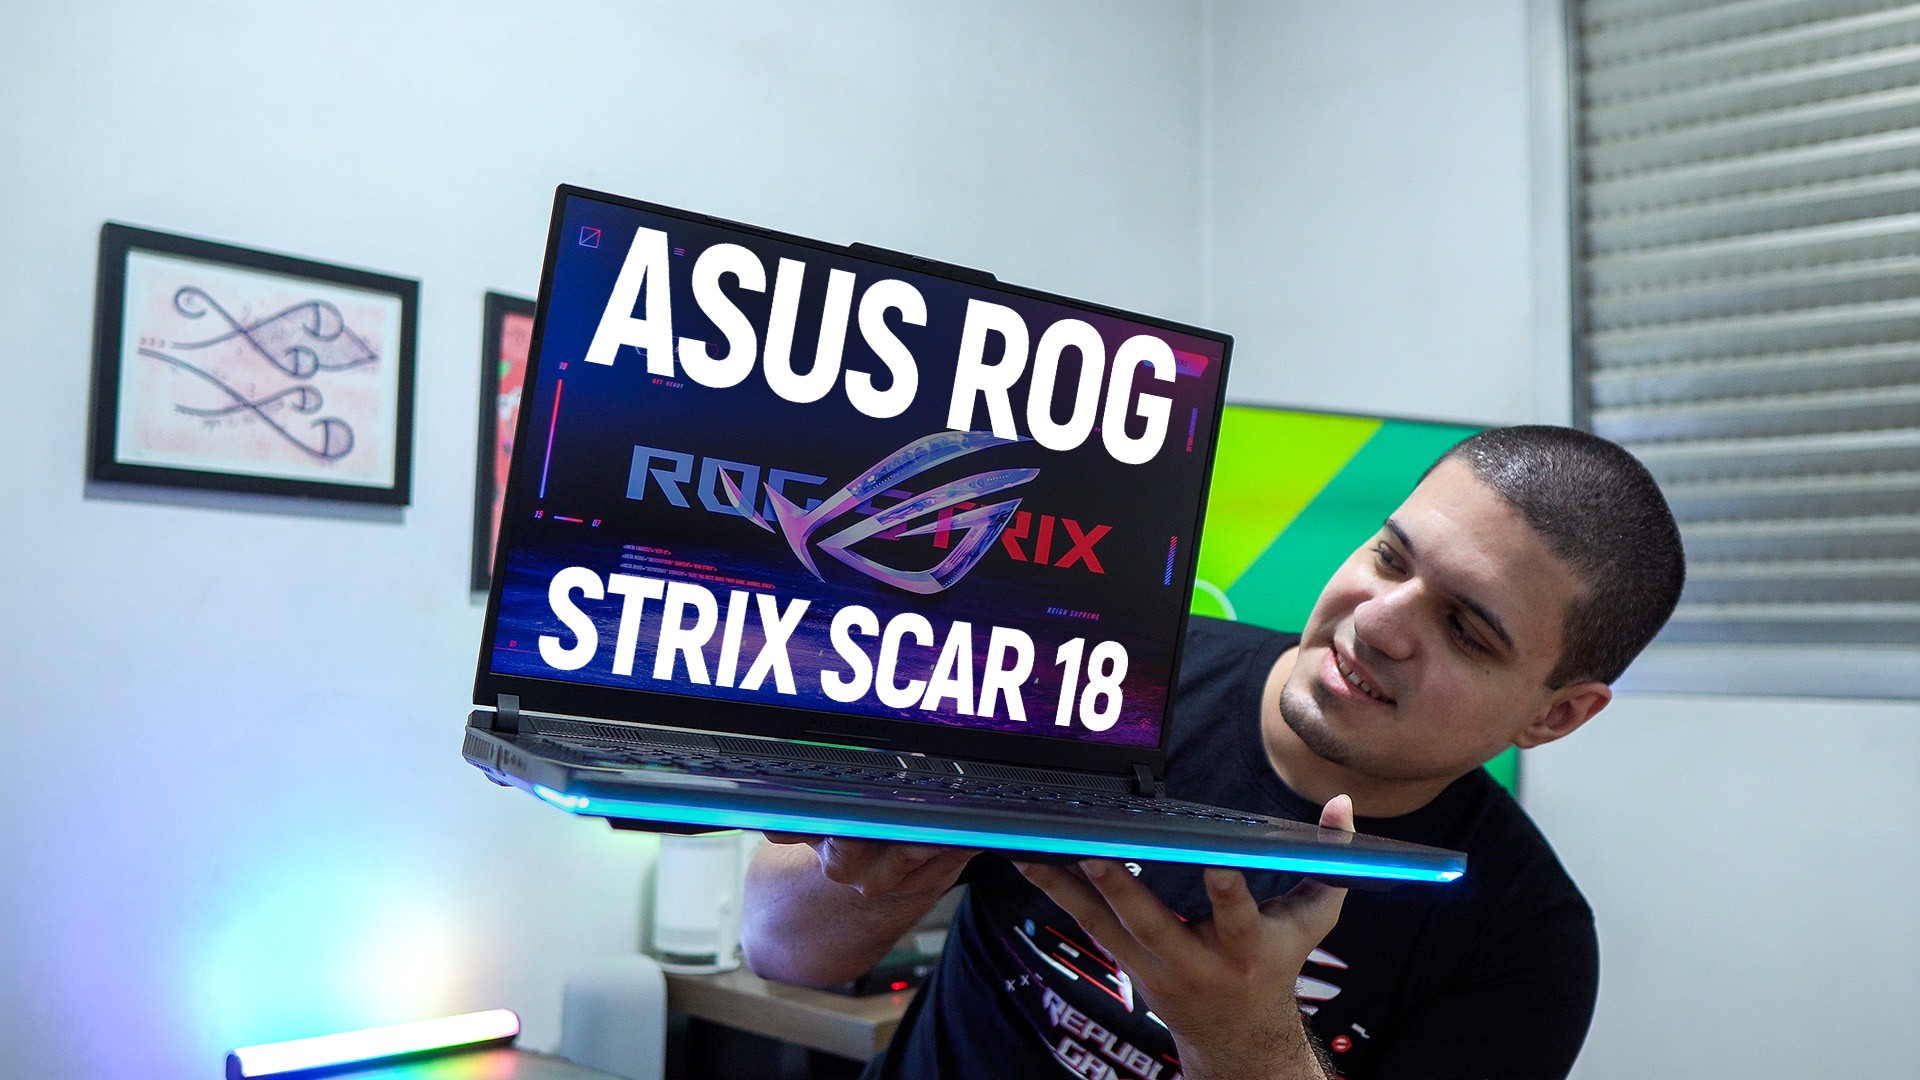 ASUS ROG Strix Scar 18: Análise Completa e Review do Novo Notebook Gamer Top de Linha no Brasil